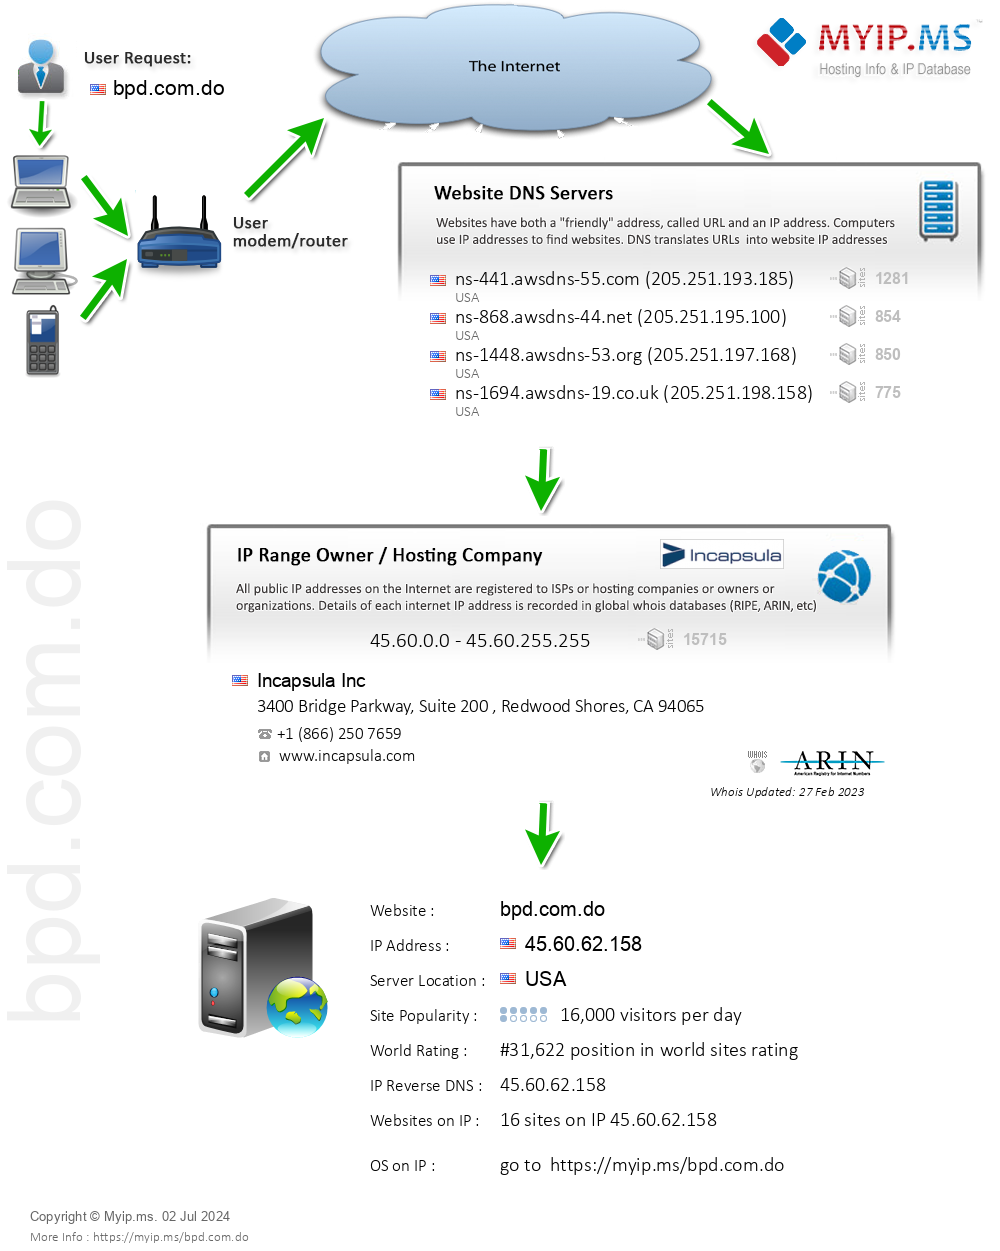 Bpd.com.do - Website Hosting Visual IP Diagram